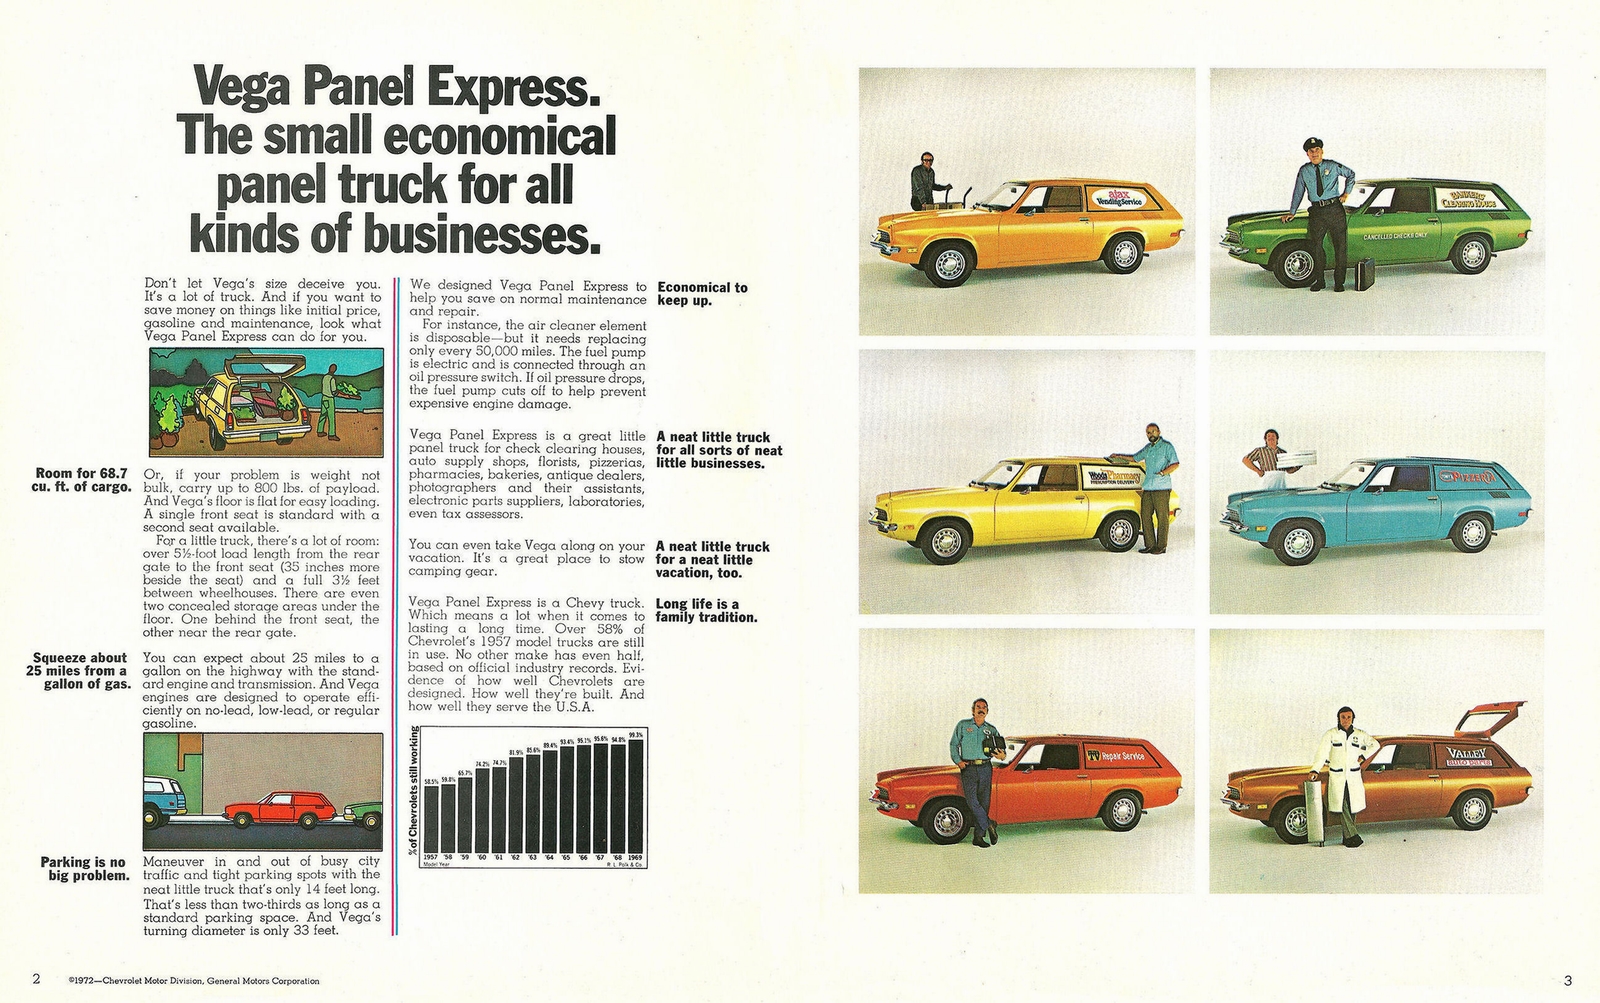 n_1973 Chevrolet Vega Panel Express-02-03.jpg